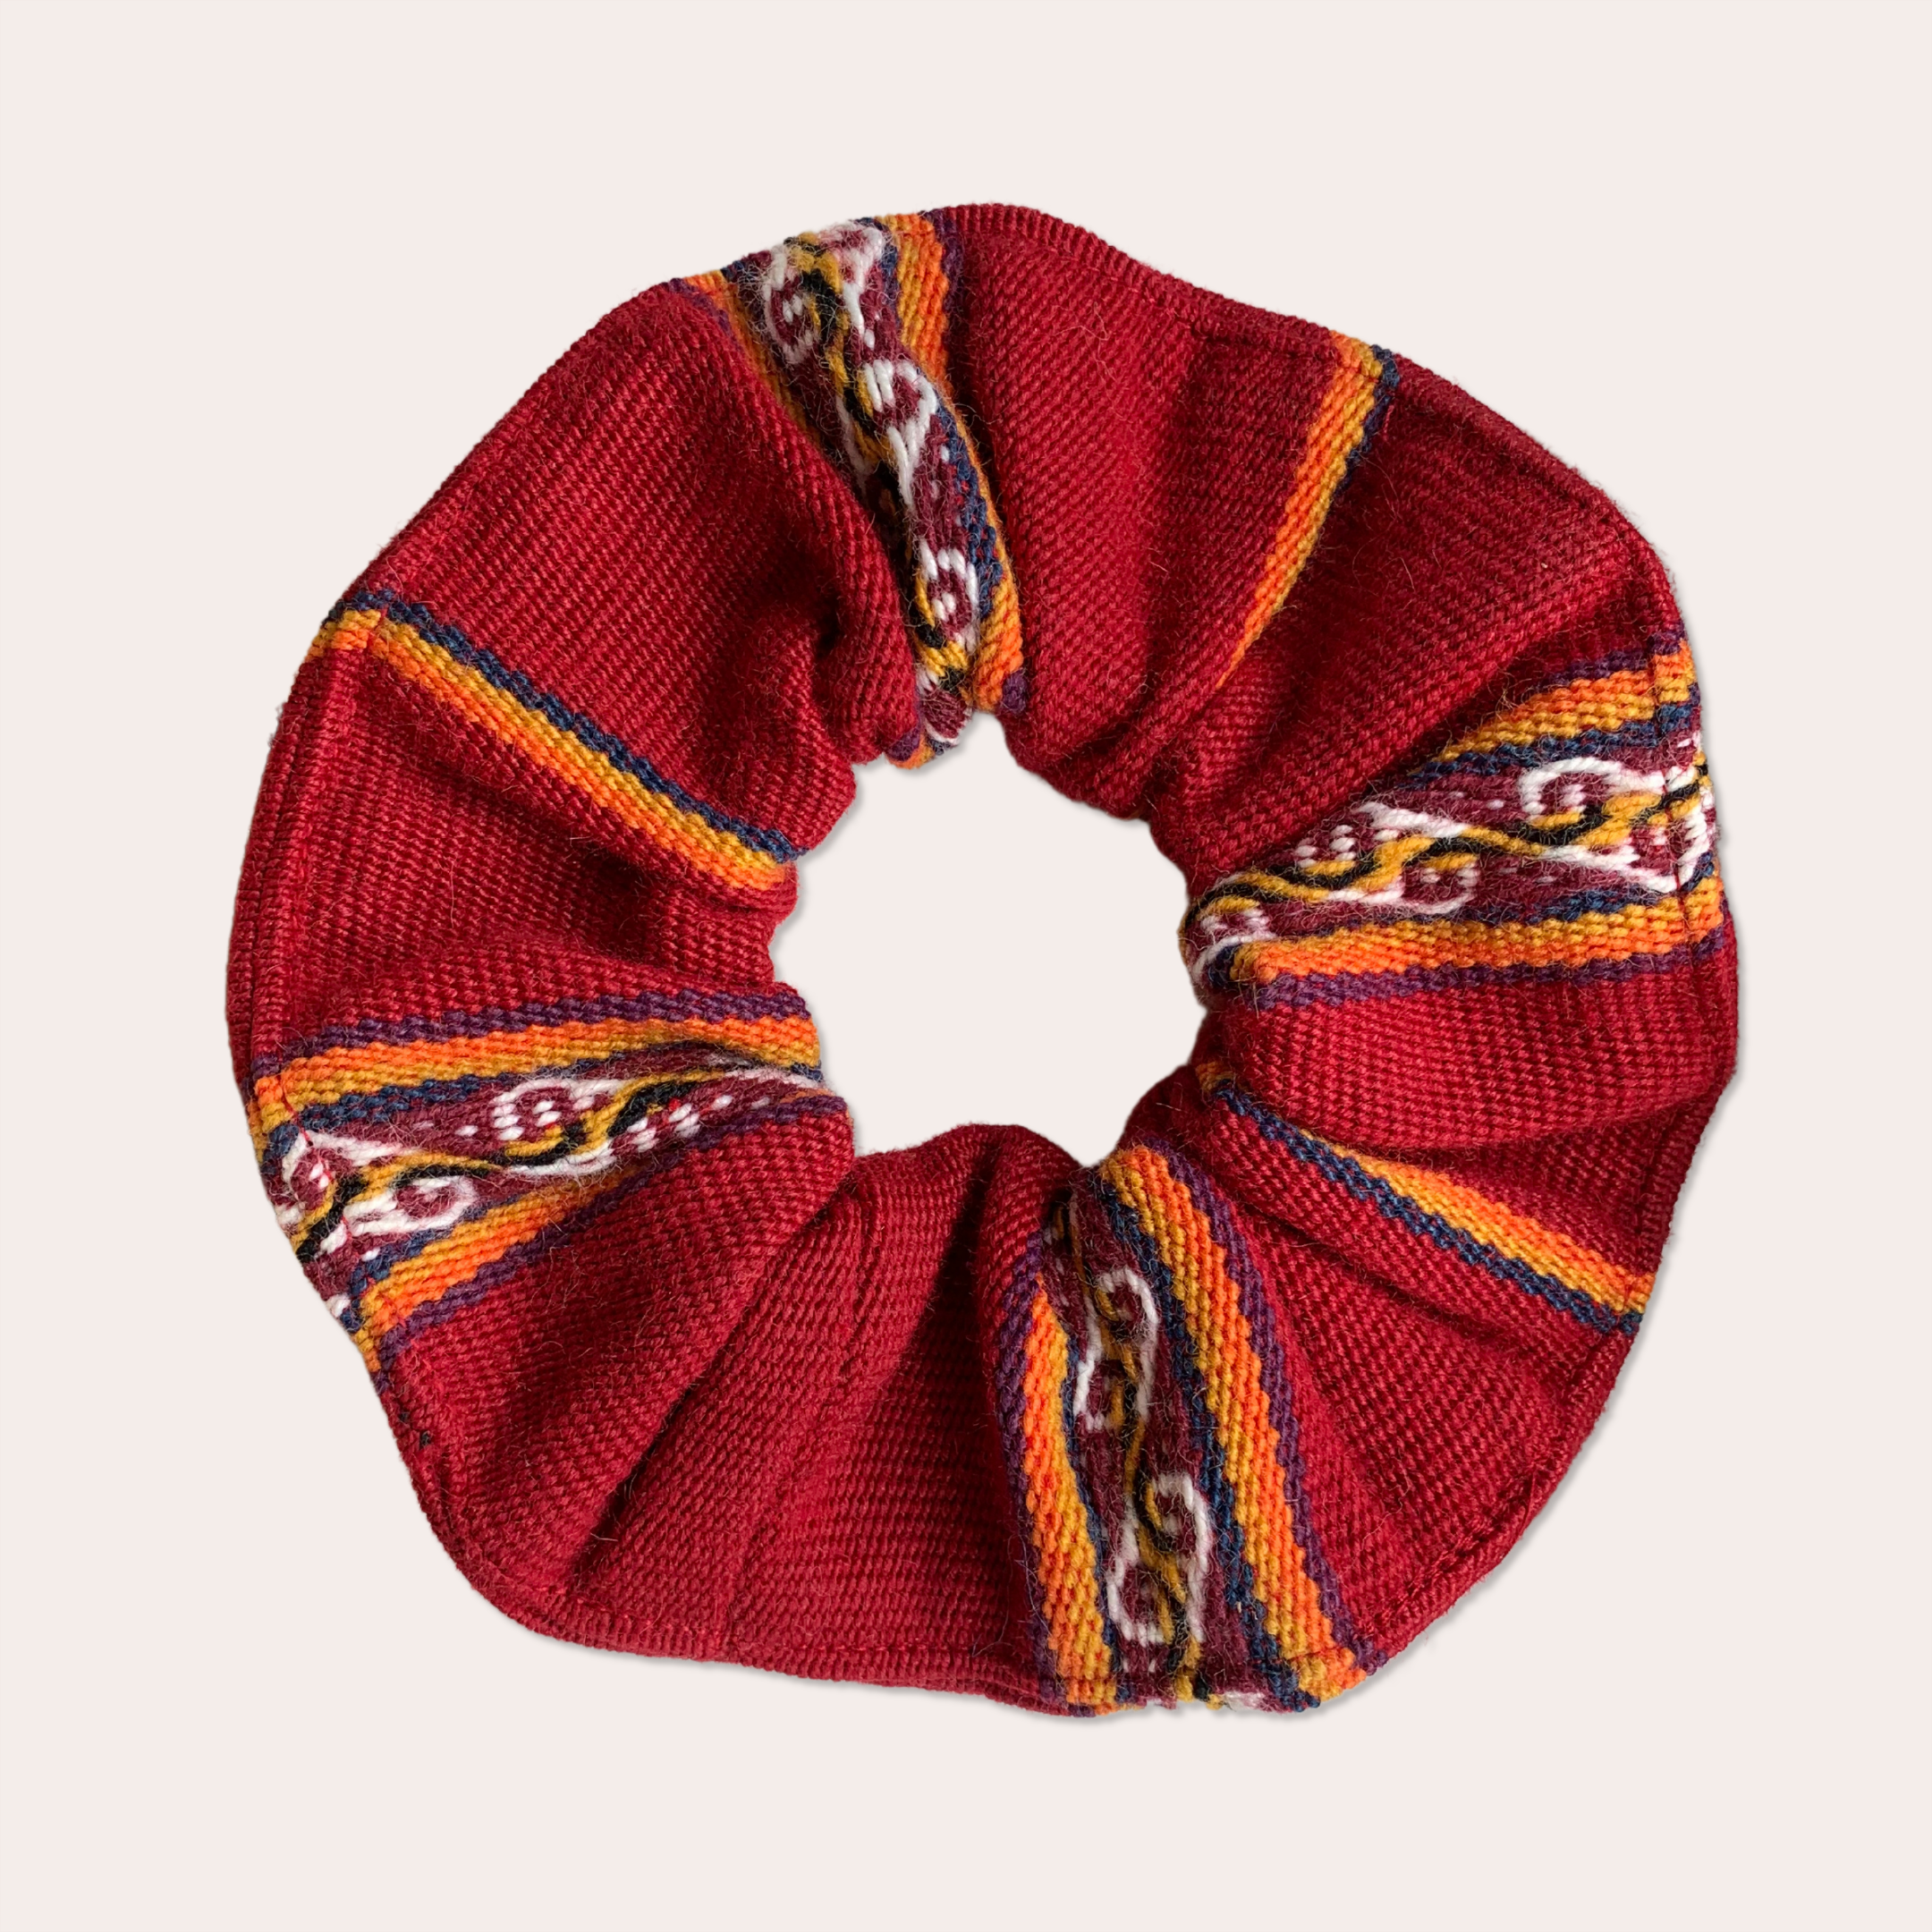 Oversized red Peruvian scrunchie